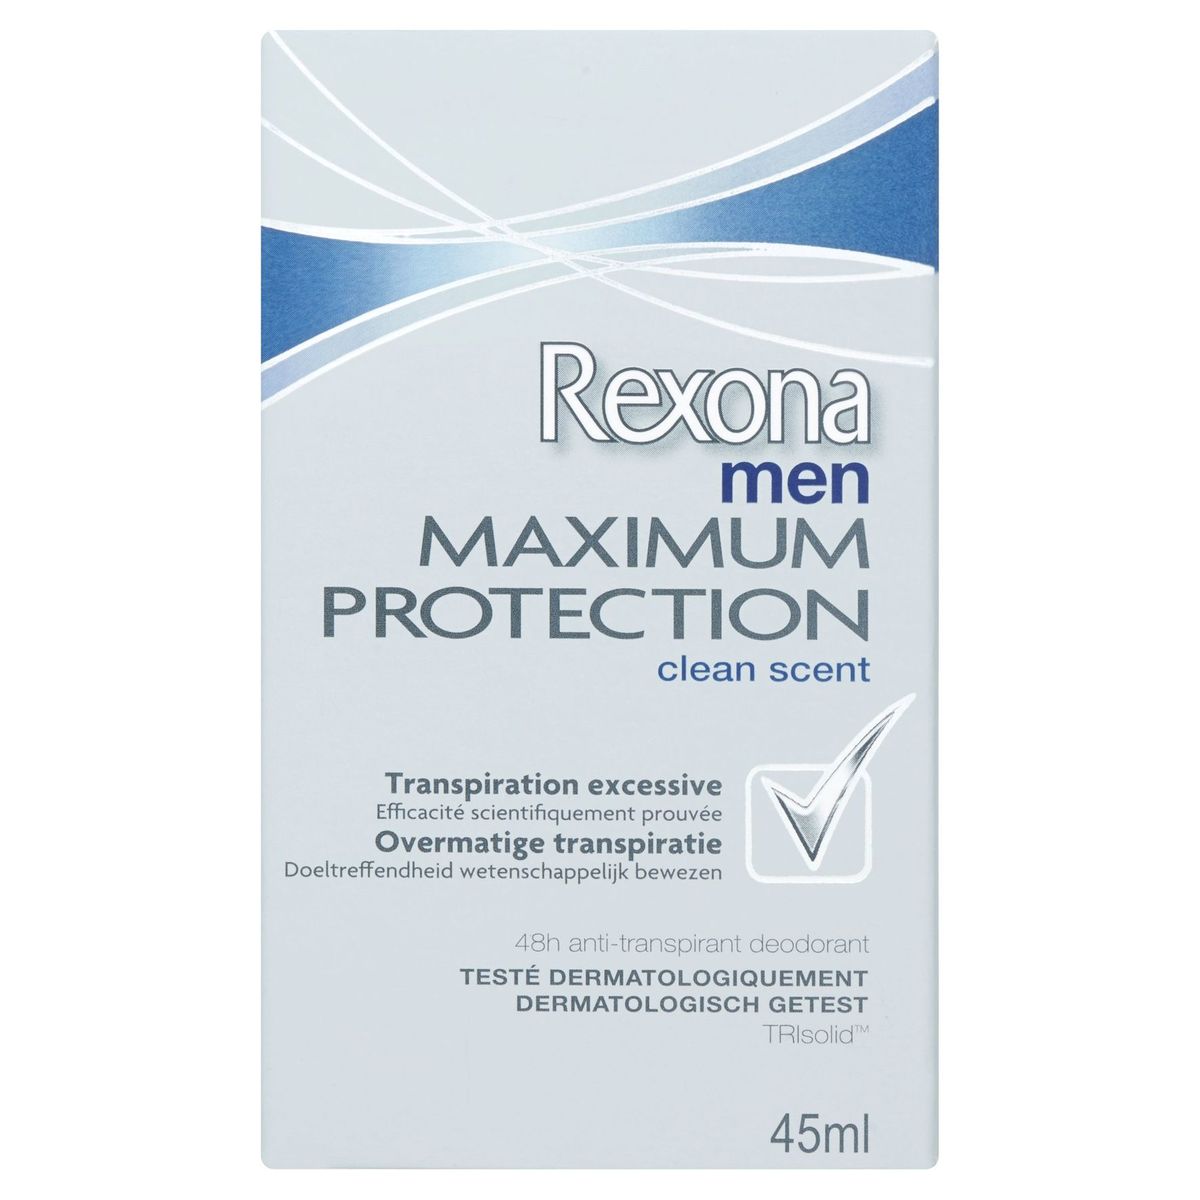 Rexona Men Cream Deodorant Max Pro Clean Scent 45ml